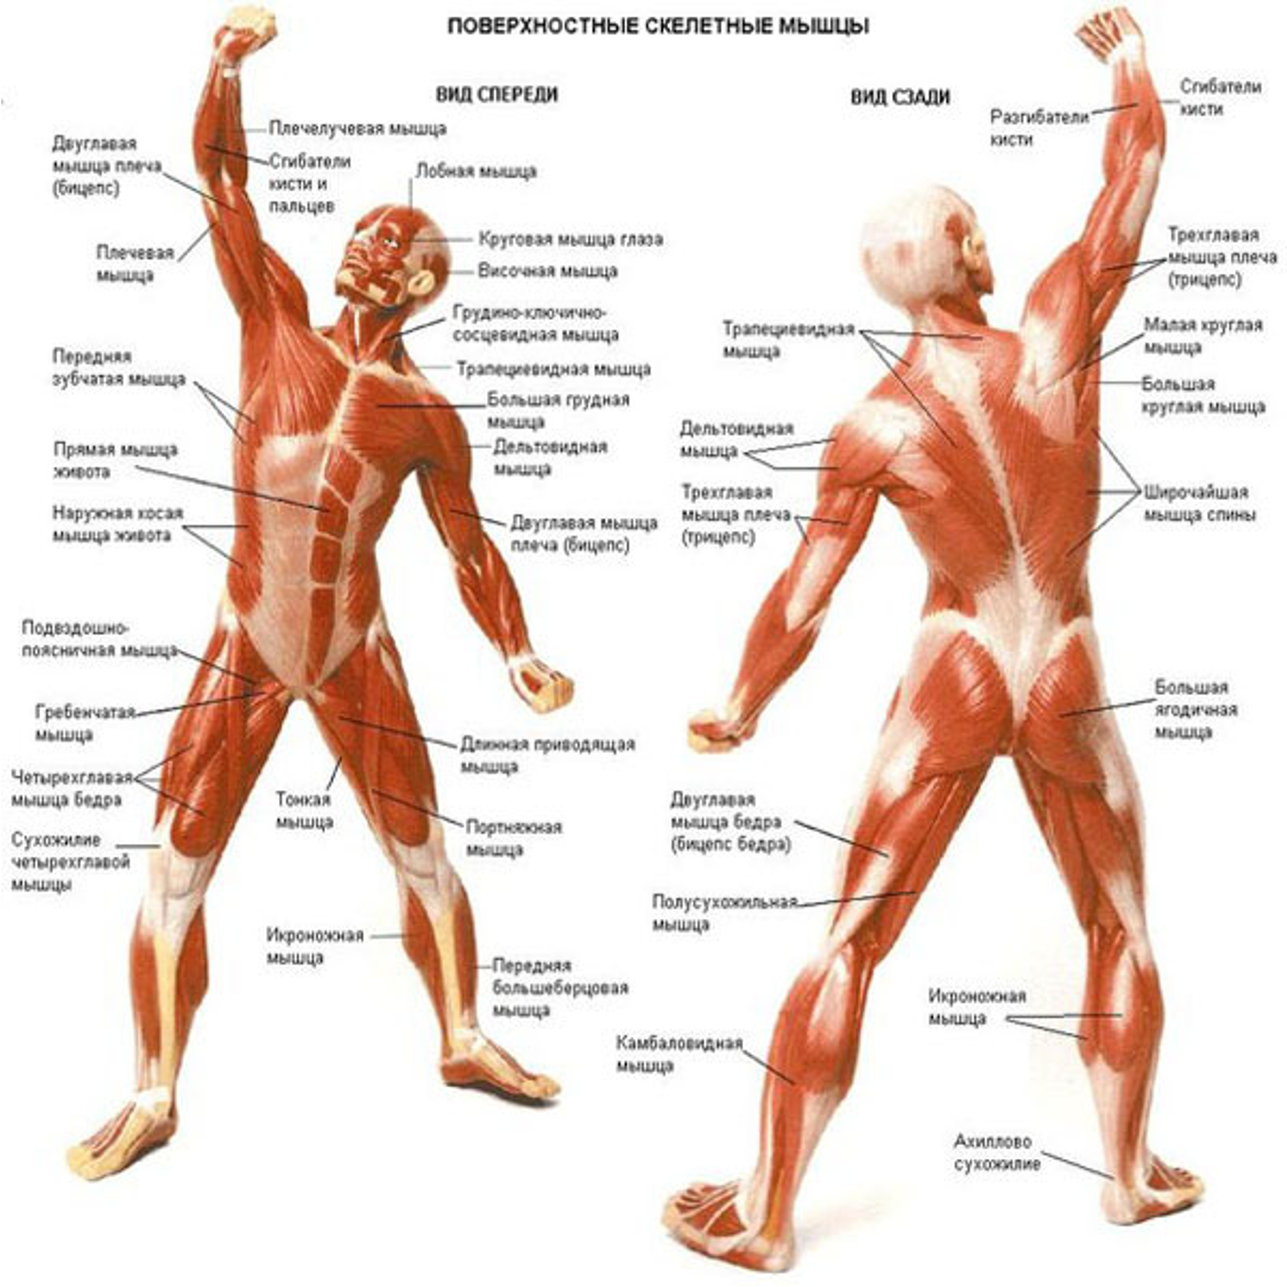 Название раз человека. Мышечный скелет человека с названиями мышц. Атлас анатомия человека мышечная система. Мышечная система человека атлас схема. Анатомия мышц человека с описанием.